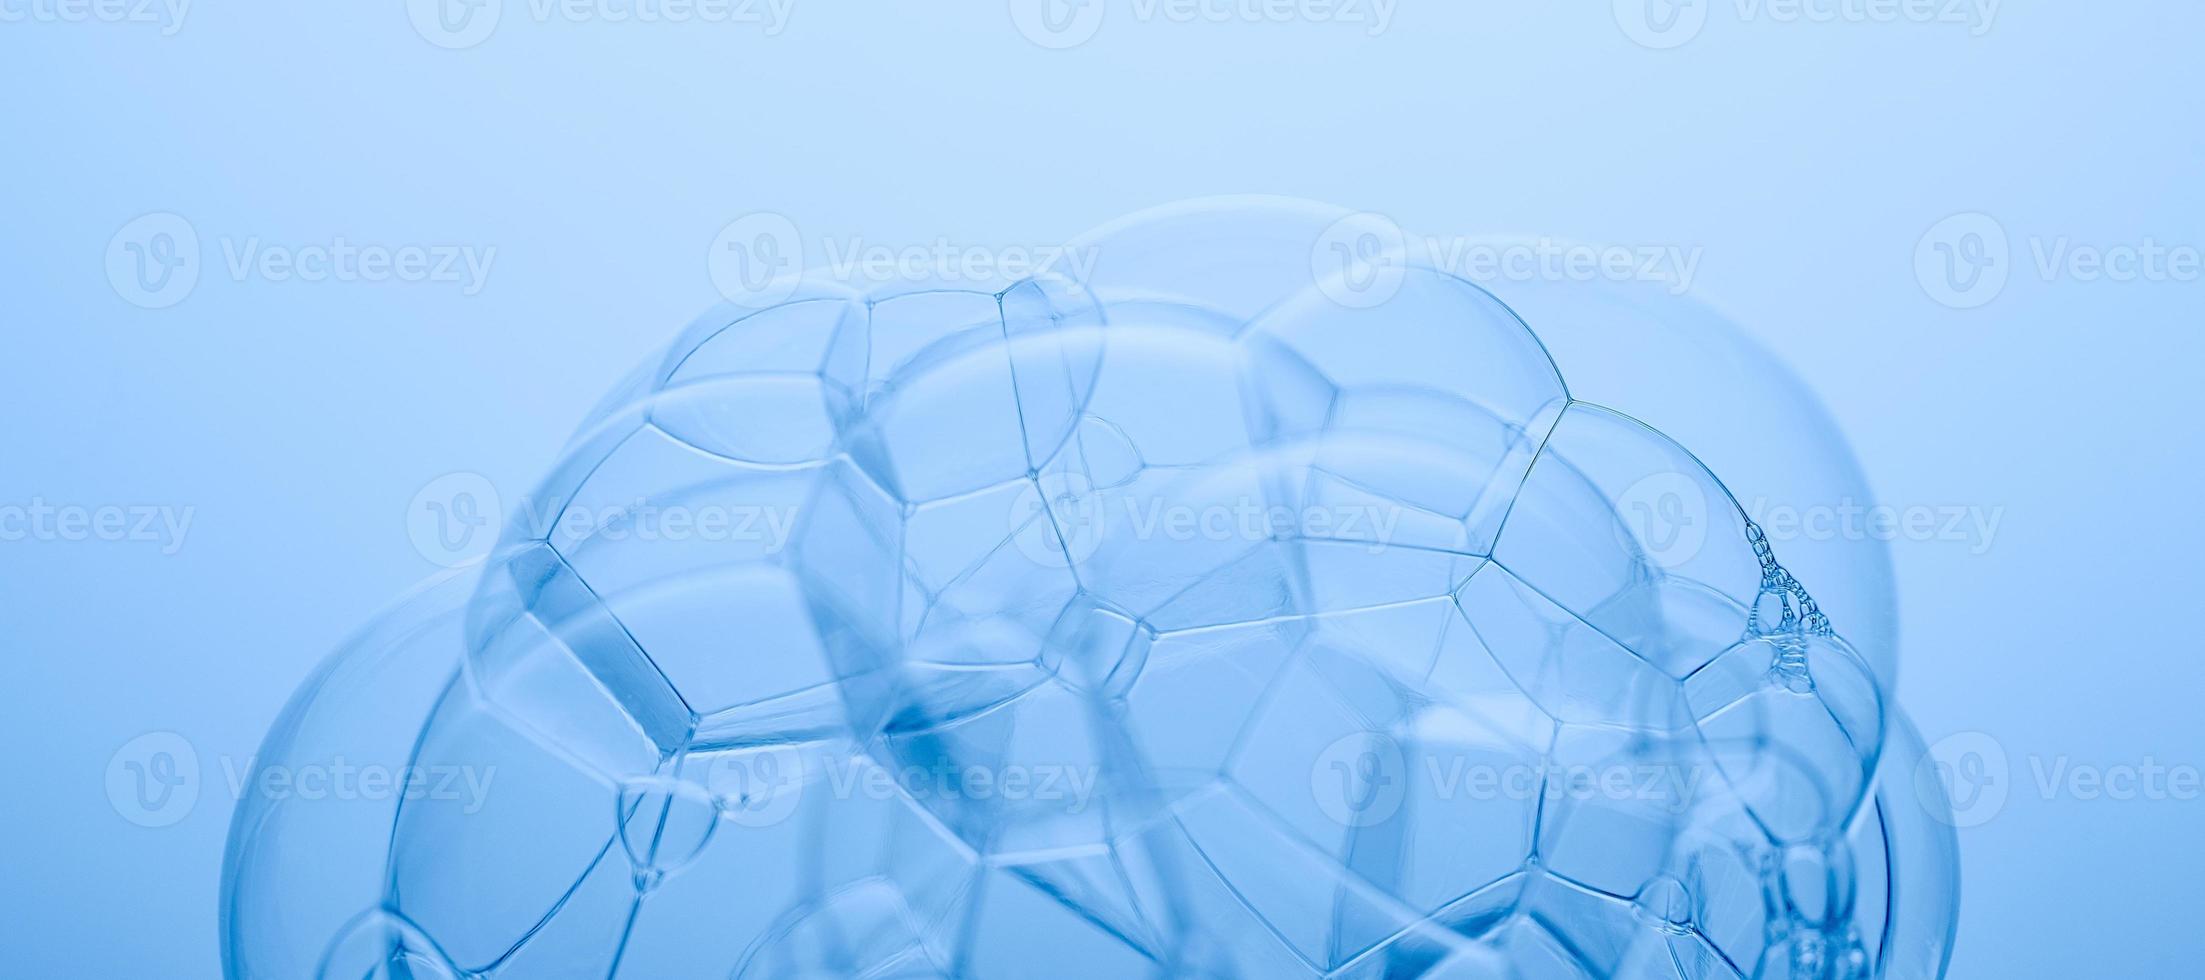 foto abstrata azul clara. bolhas de sabão em um fundo azul.